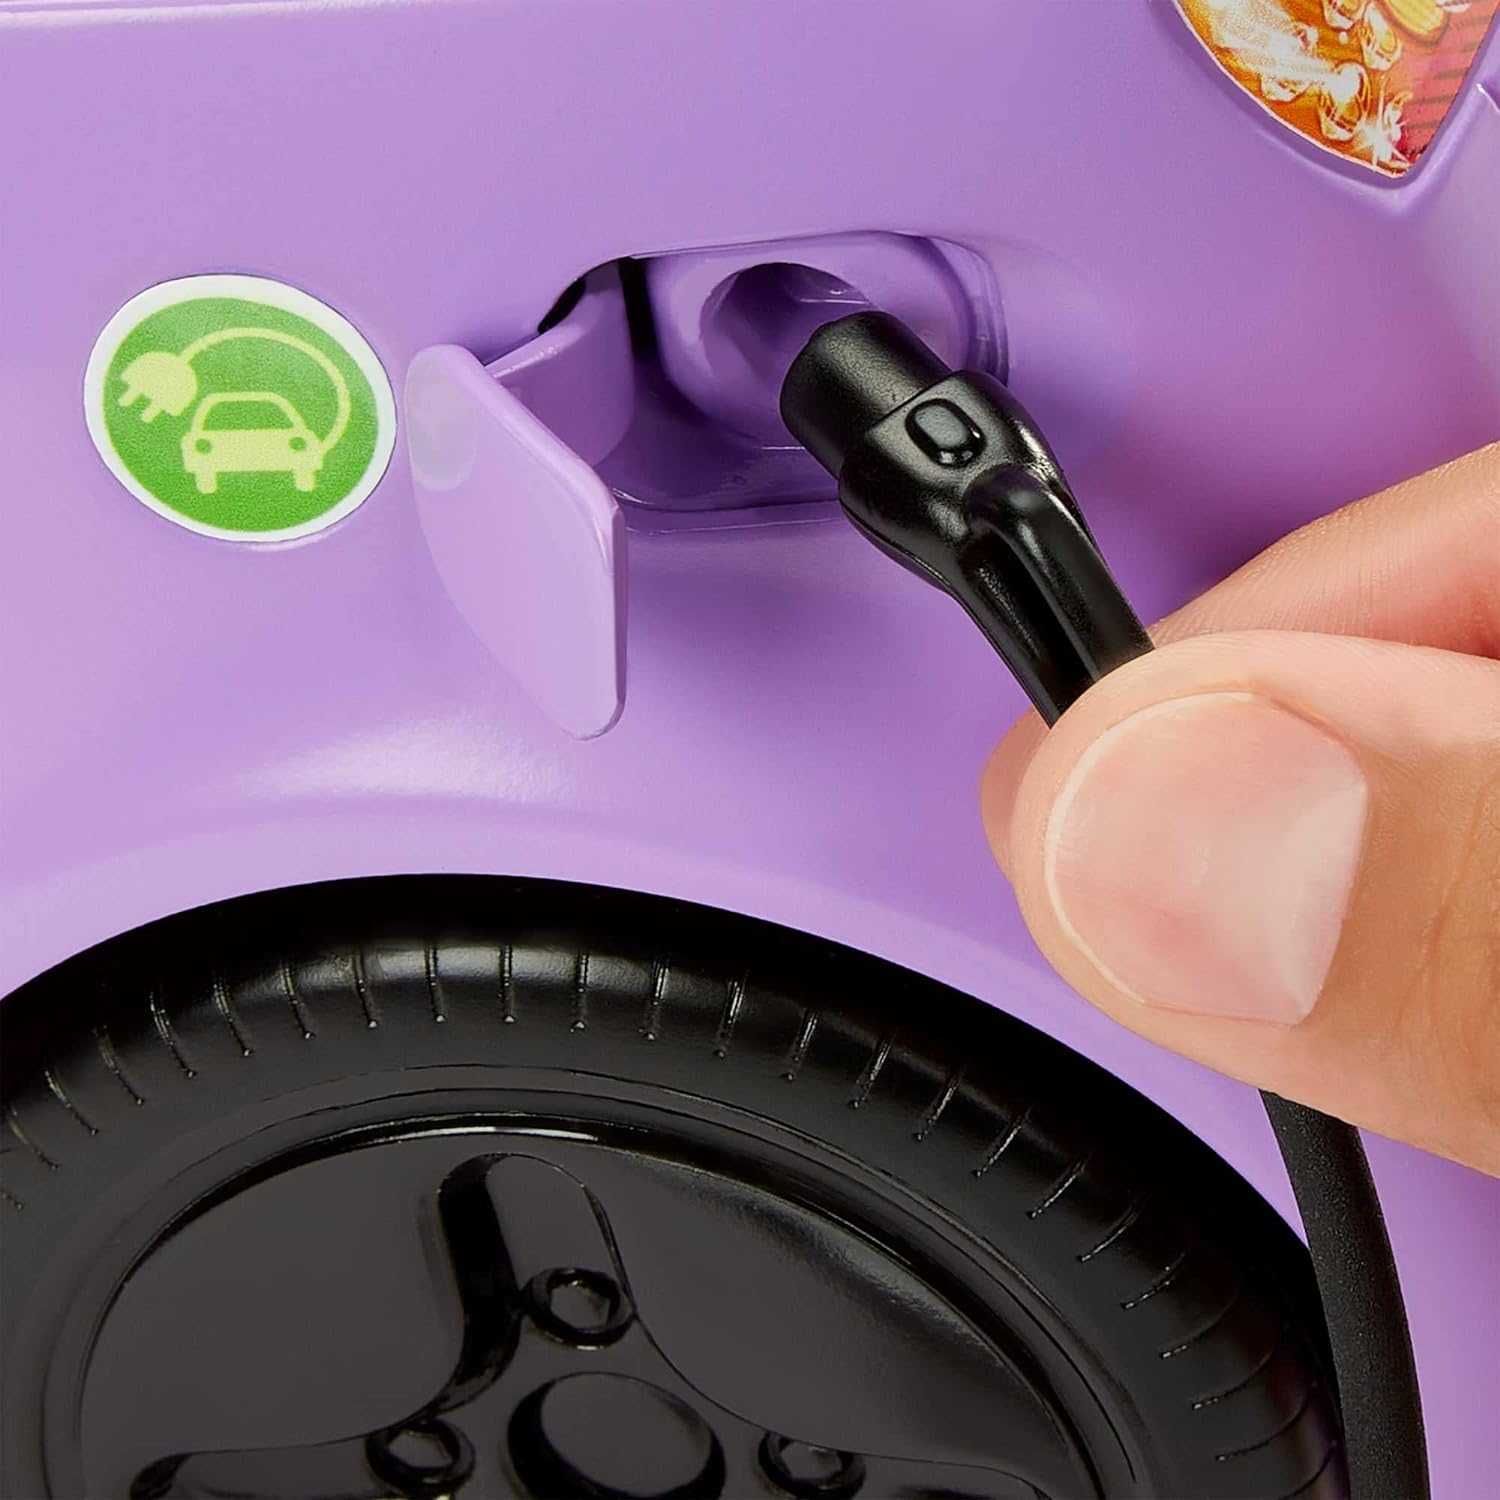 Электромобиль Барби Barbie Toy Car Electric Vehicle HJV36